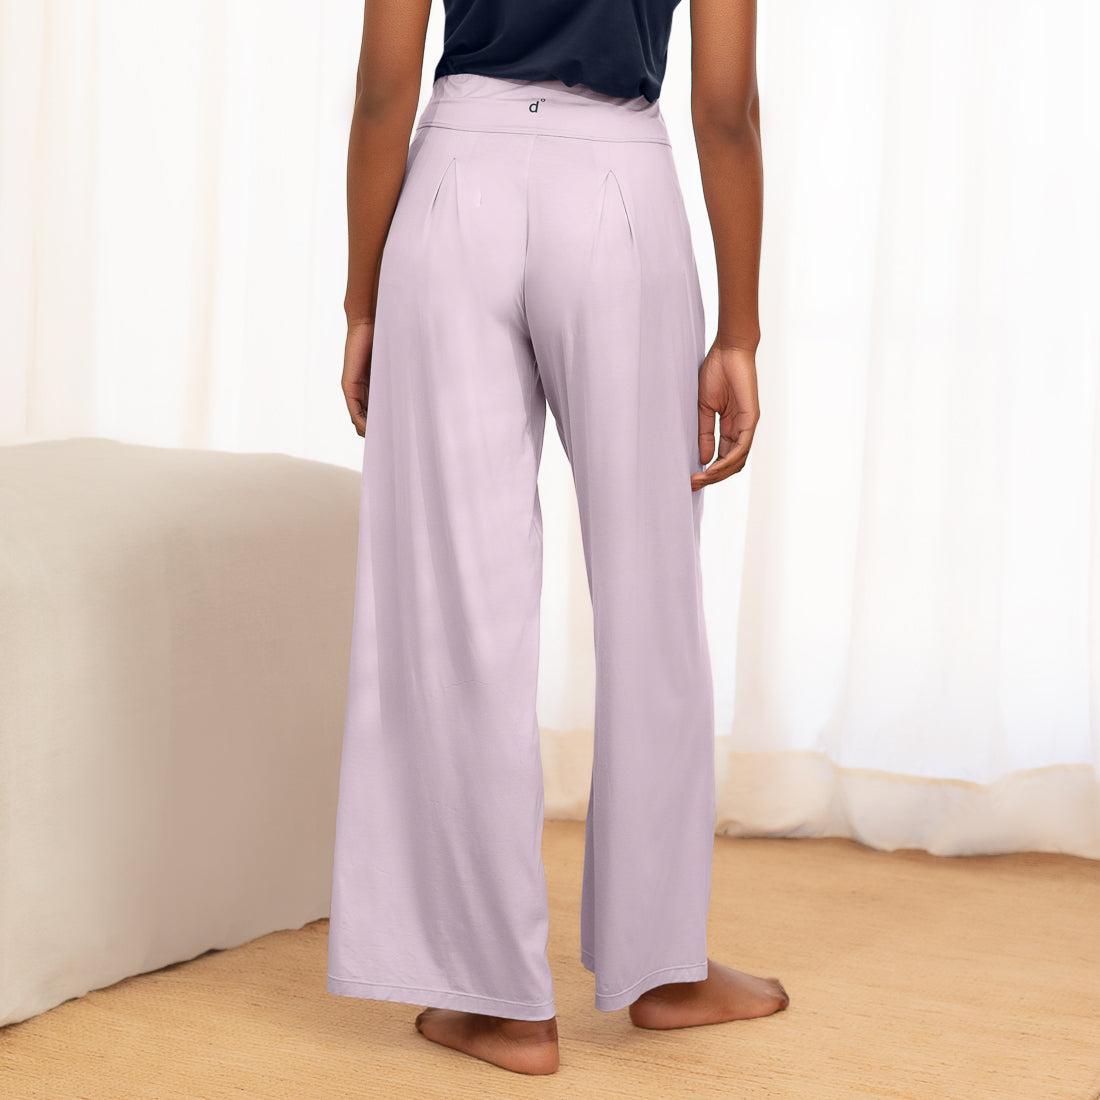 Women's cooling pajamas pants || Lavender